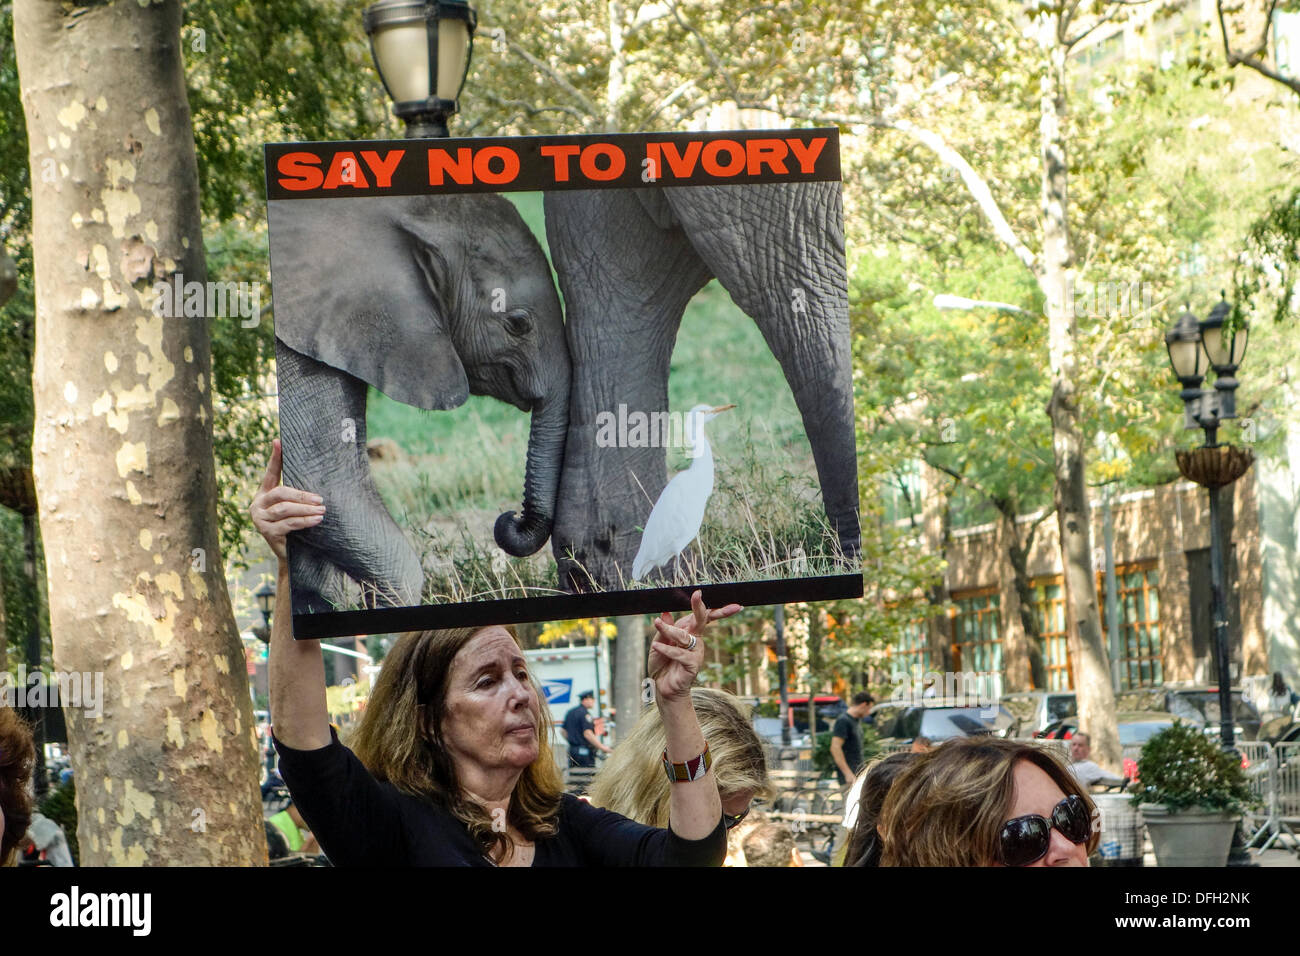 New York, NY, USA. 4 octobre 2013. Les partisans de l'iWorry en mars une campagne pour arrêter le massacre des éléphants pour leurs défenses en ivoire. Ils ont la tête de l'Organisation des Nations Unies de présenter une lettre appelant à des sanctions plus sévères et un changement dans les politiques mondiales concernant l'abattage des éléphants et de la vente de l'ivoire. Le David Sheldrick Wildlife Trust a organisé les marches de iWorry dans 15 villes à travers le monde dans la plus grande manifestation de sensibilisation pour les éléphants. Credit : Paulette Sinclair/Alamy Live News Banque D'Images